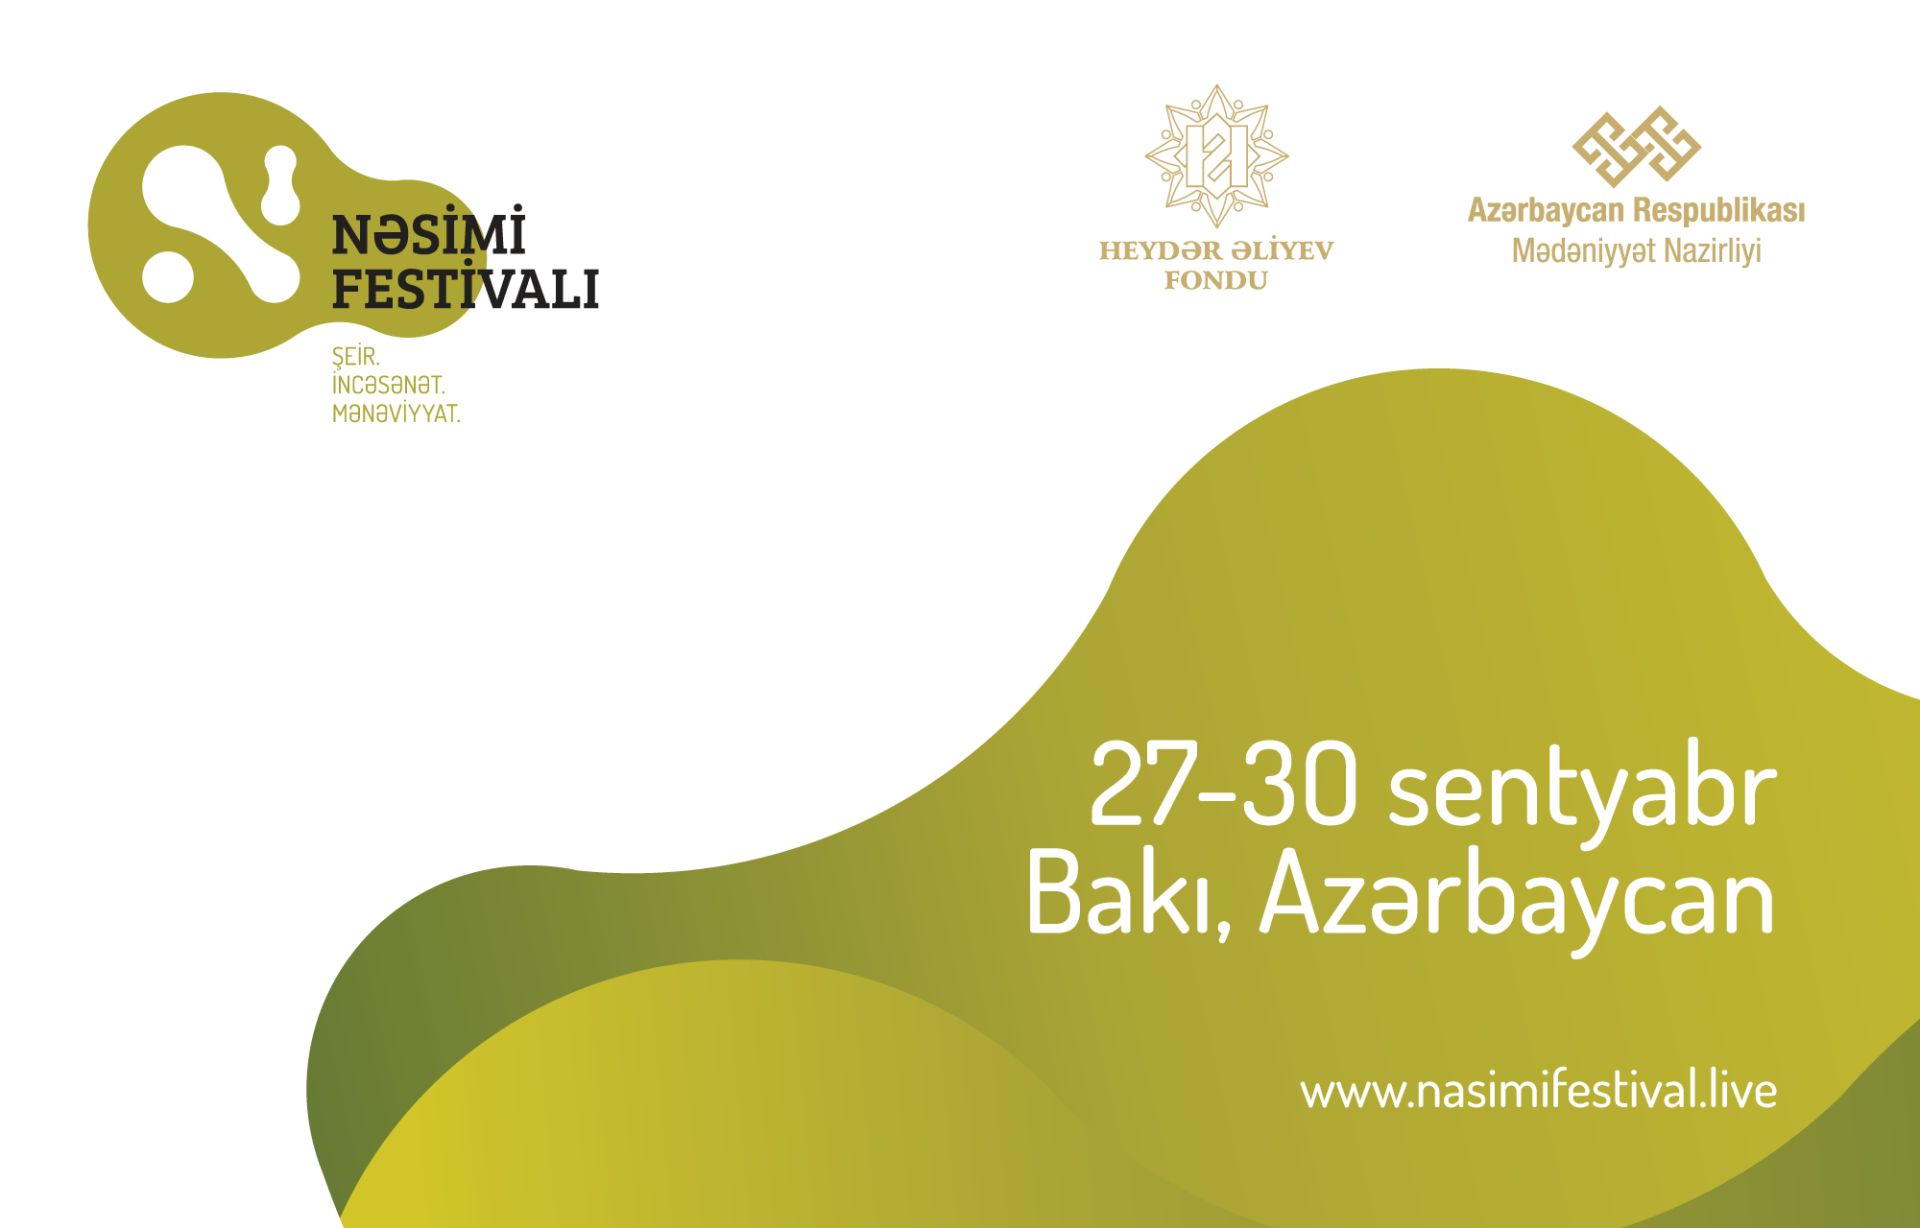 Благодаря Фестивалю Насими, Баку станет центром поиска духовности через искусство и поэзию